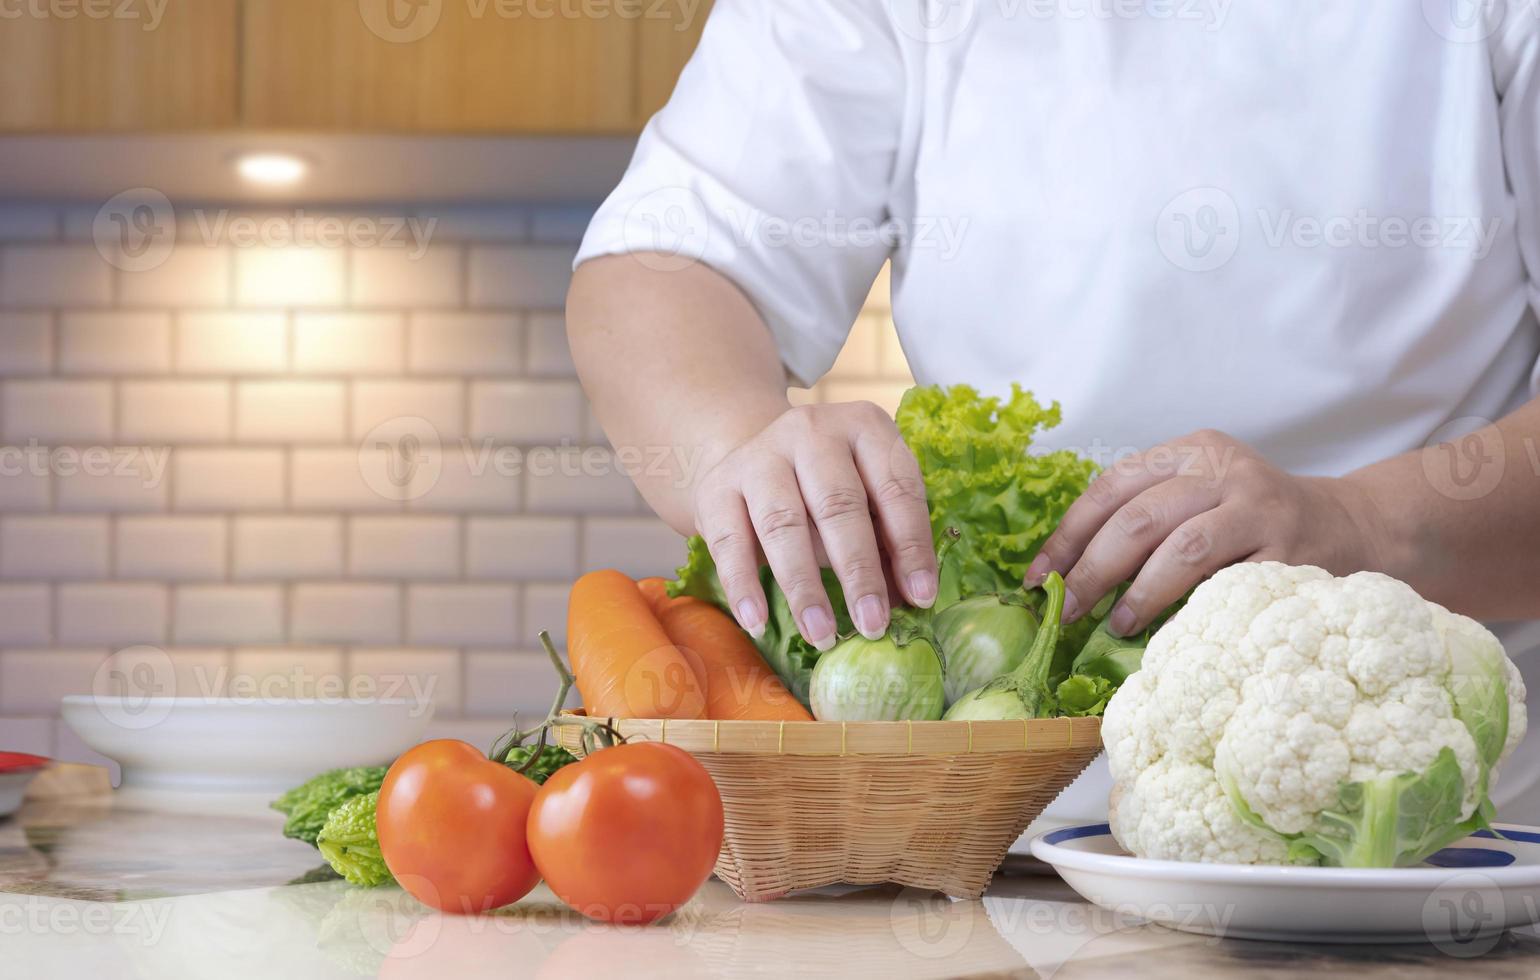 primer plano de la mano de una mujer con sobrepeso preparando varias verduras orgánicas en una cesta de bambú para cocinar en la mesa de la cocina, concepto de estilo de vida saludable foto